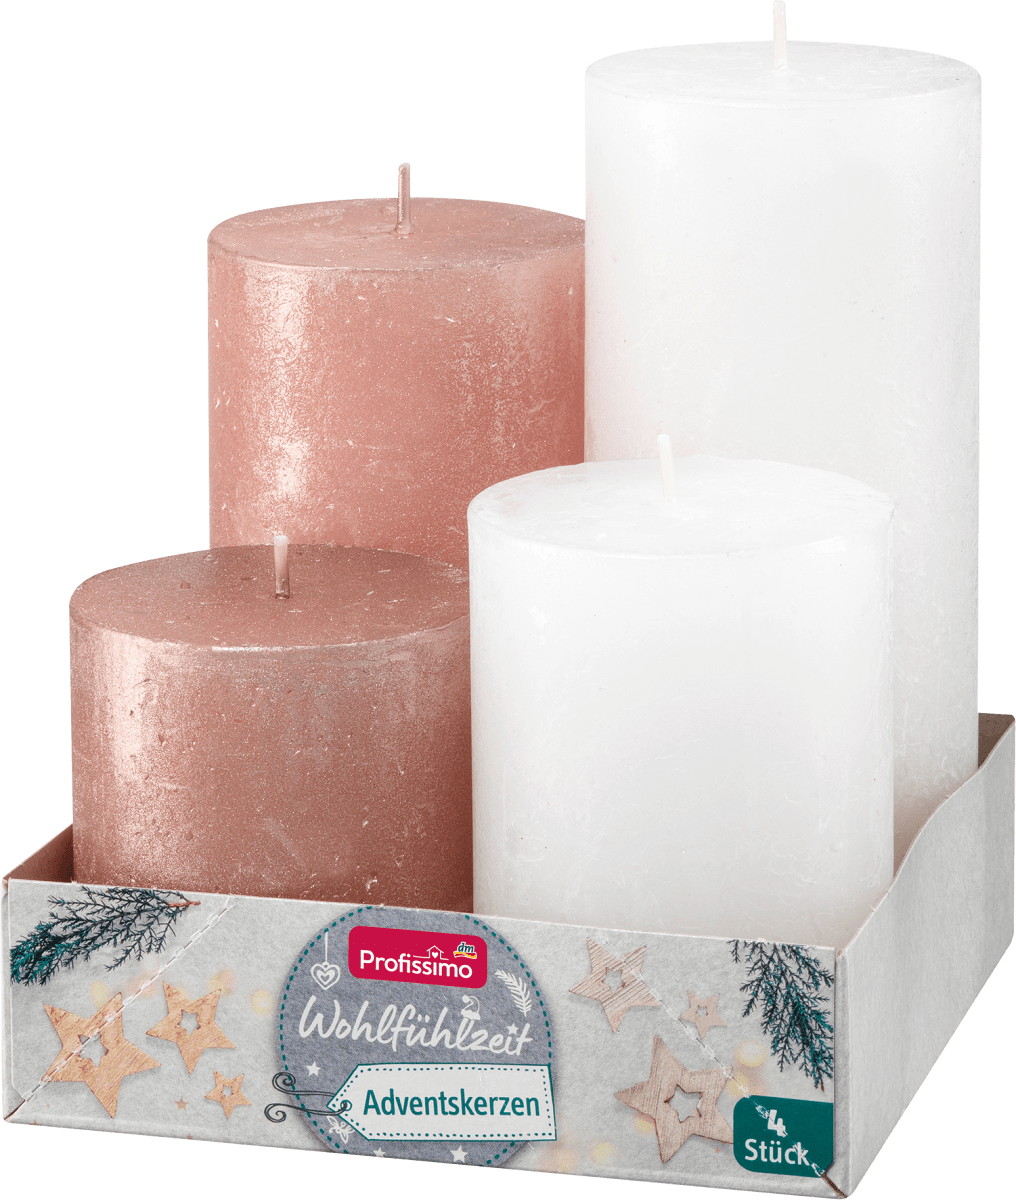 Profissimo Rustik günstig metallic Stumpenkerzen-Set kaufen dauerhaft rosé-weiß, 4 online St